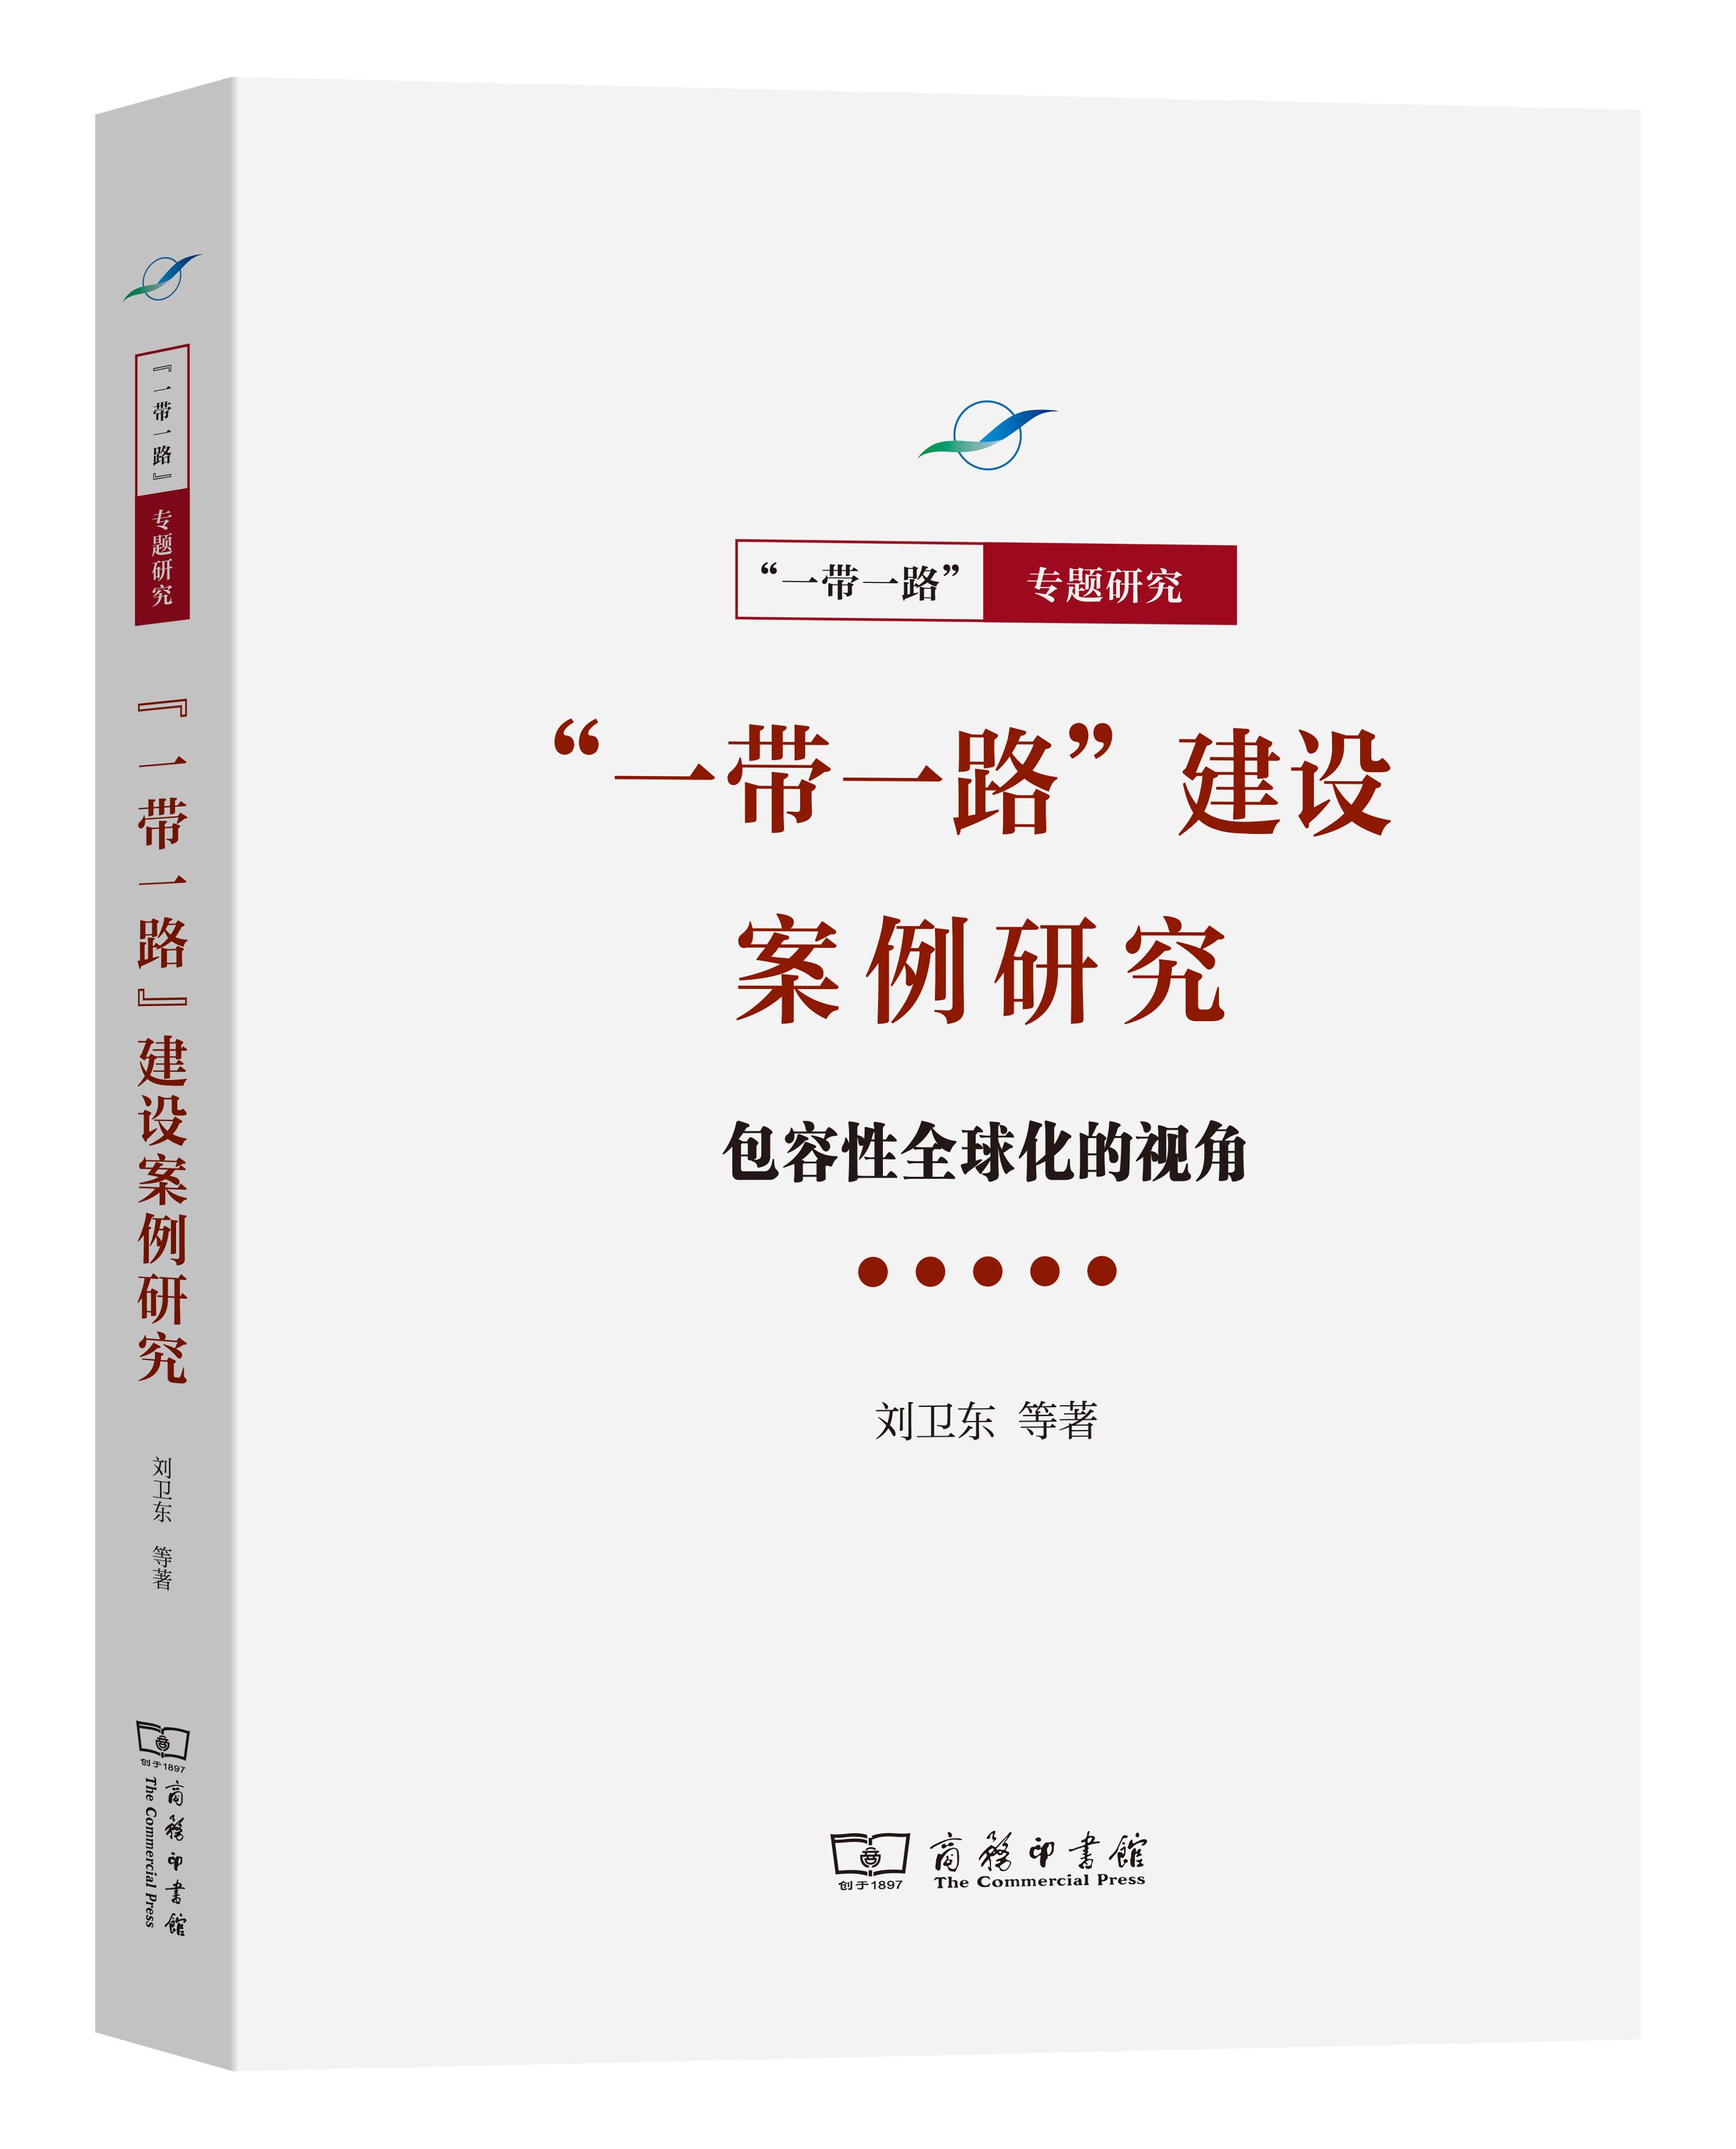 书读中国云品好书| “一带一路”系列好书之十七-中国文明网